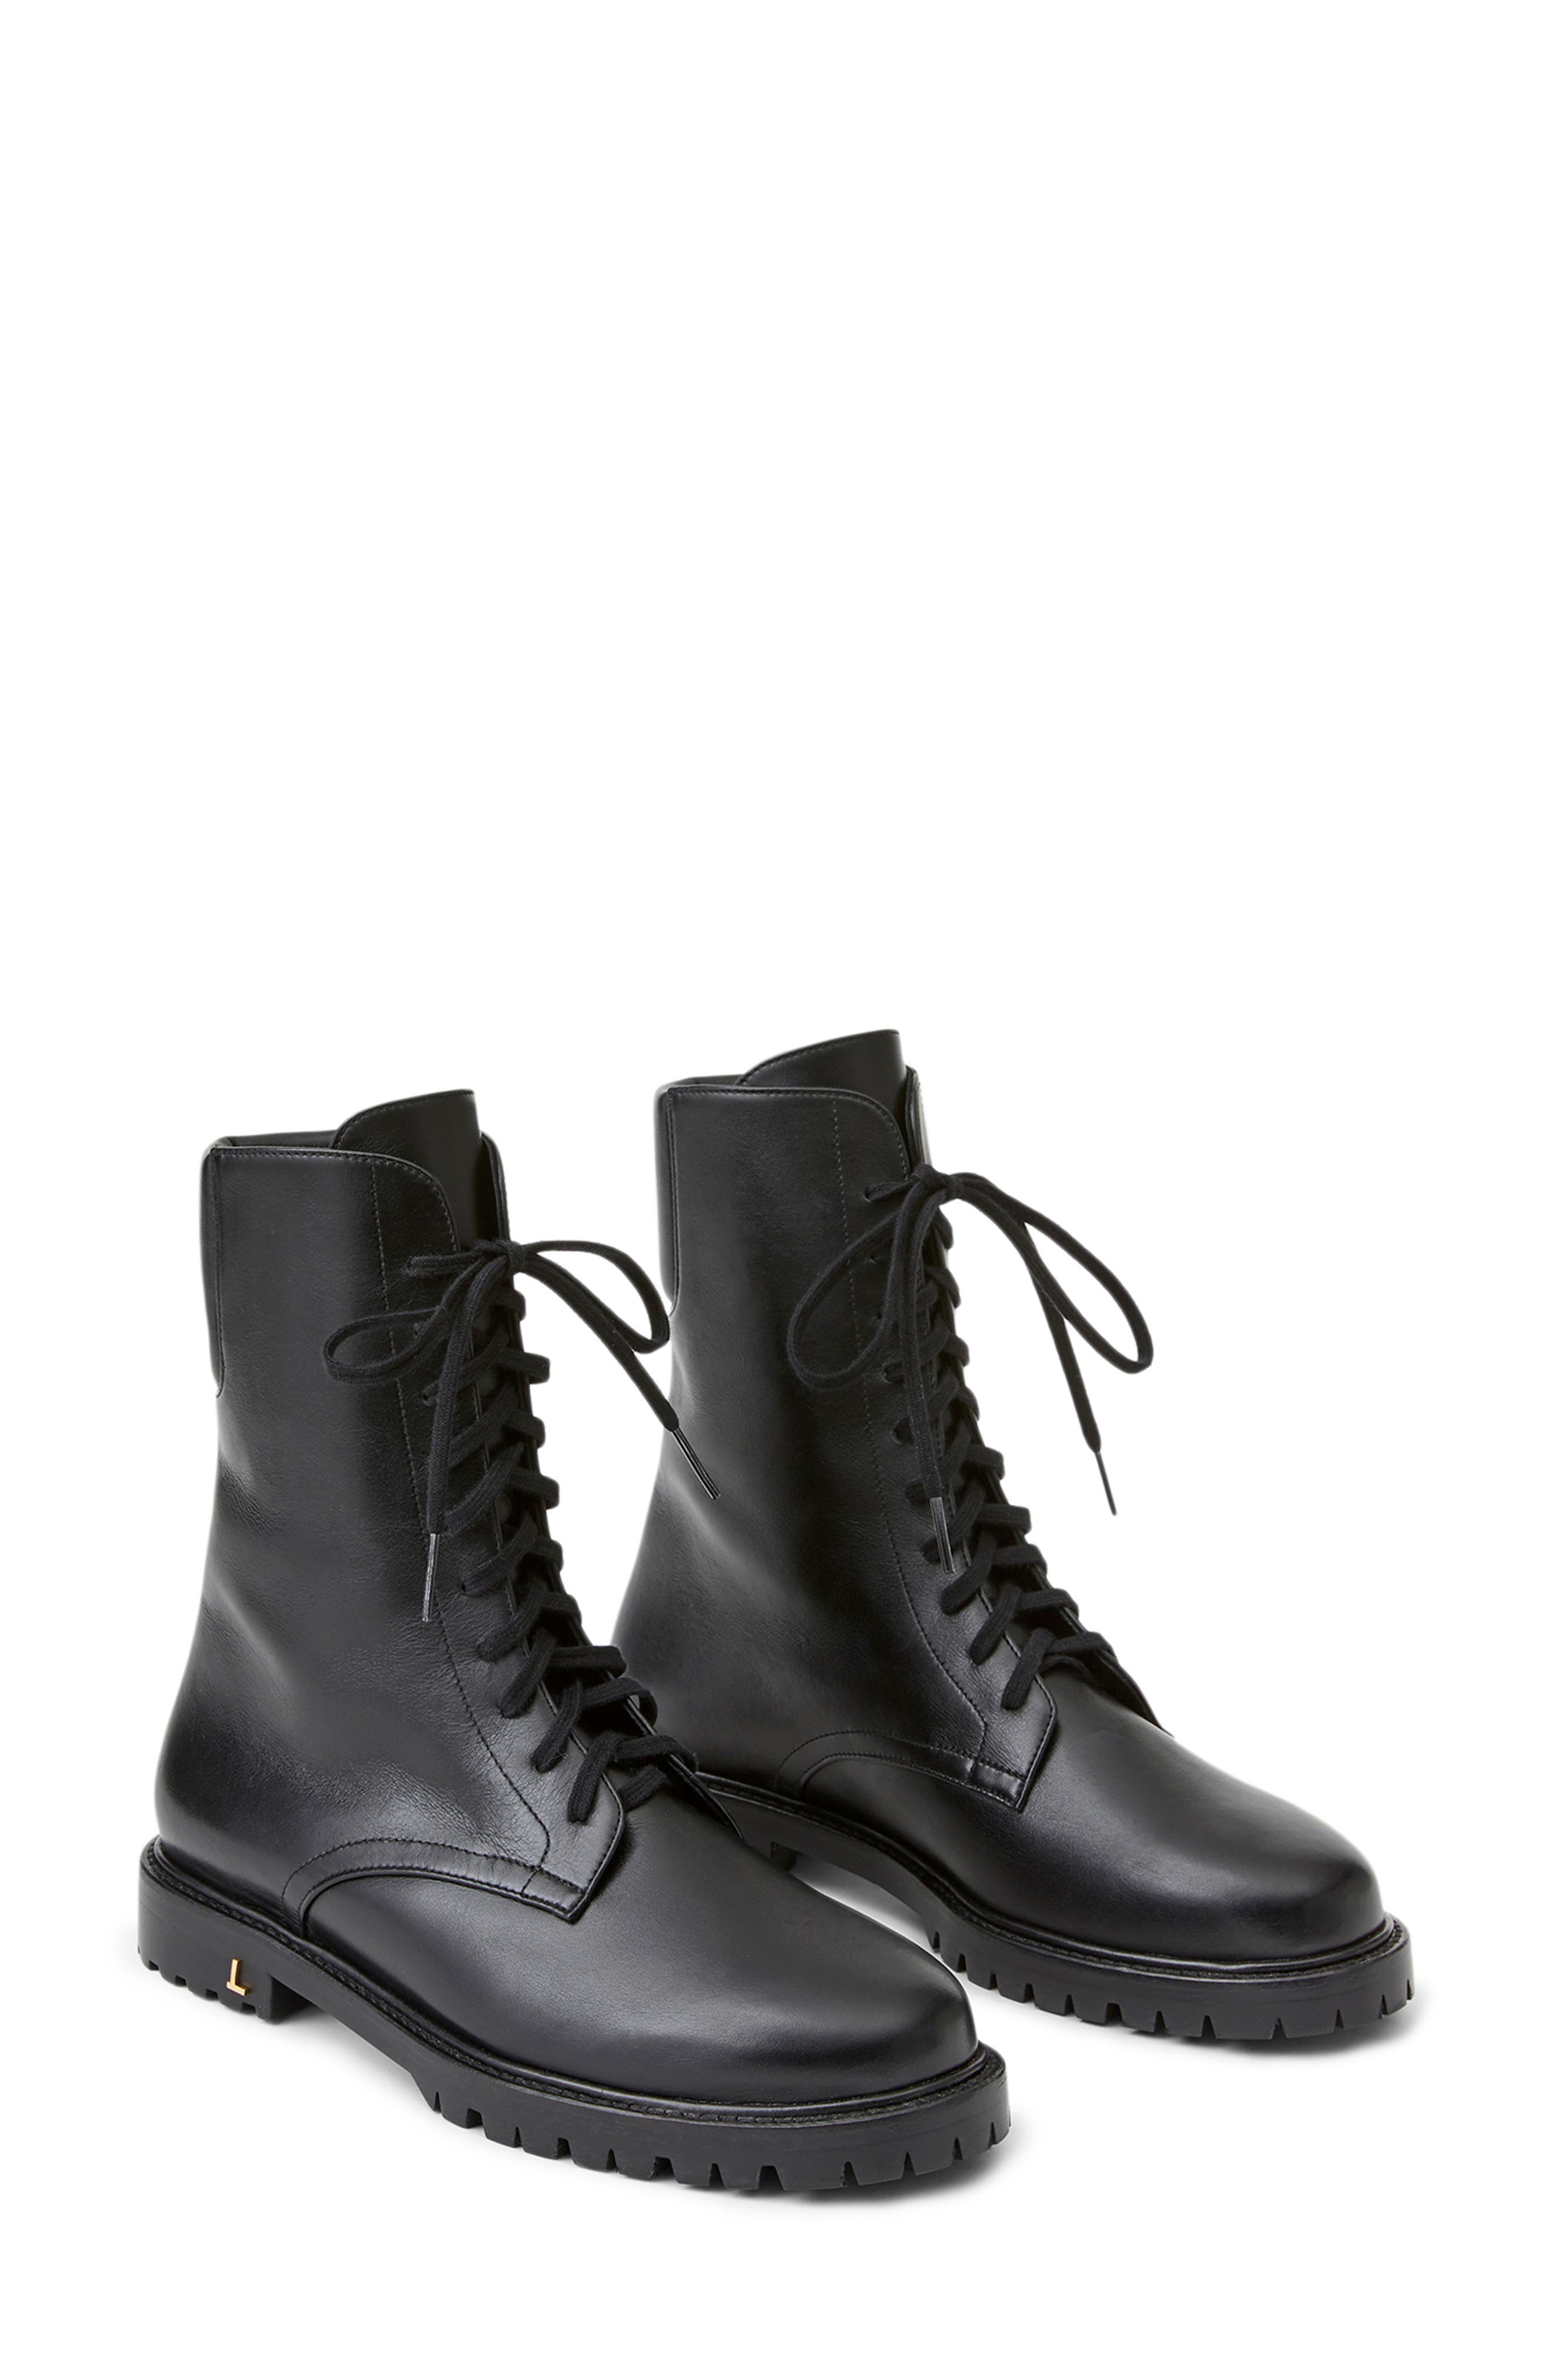 designer combat boots sale